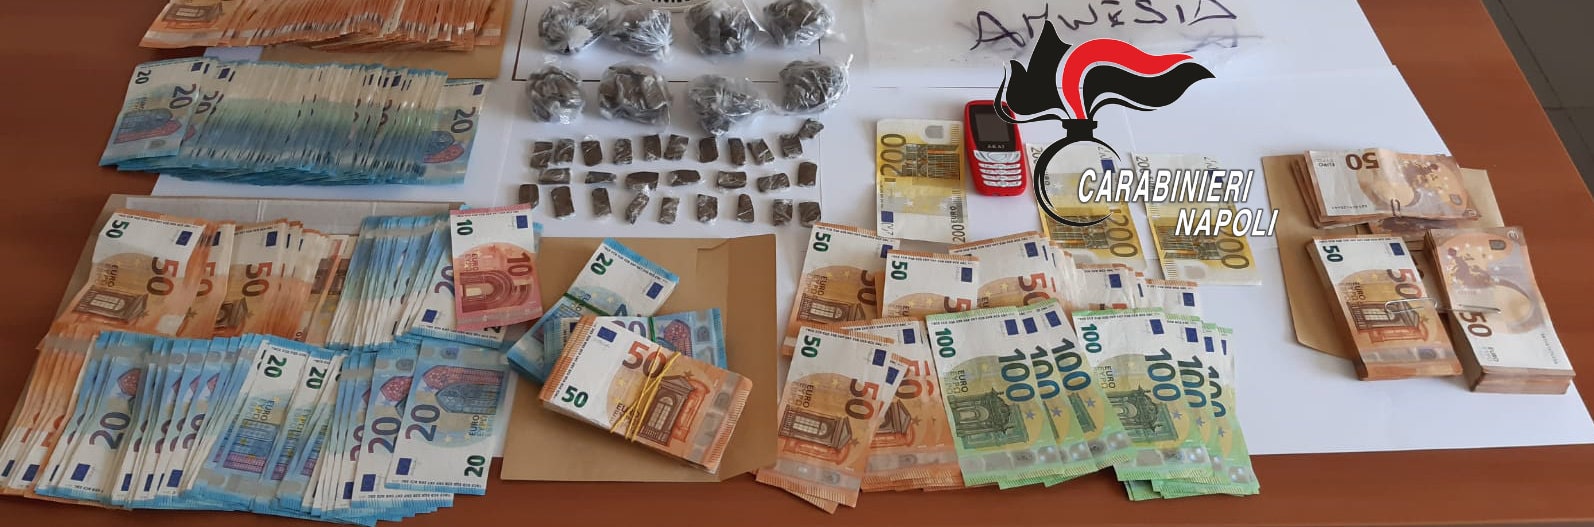 Melito, controlli dei Carabinieri: 2 arresti per droga e 7 denunce per ricettazione